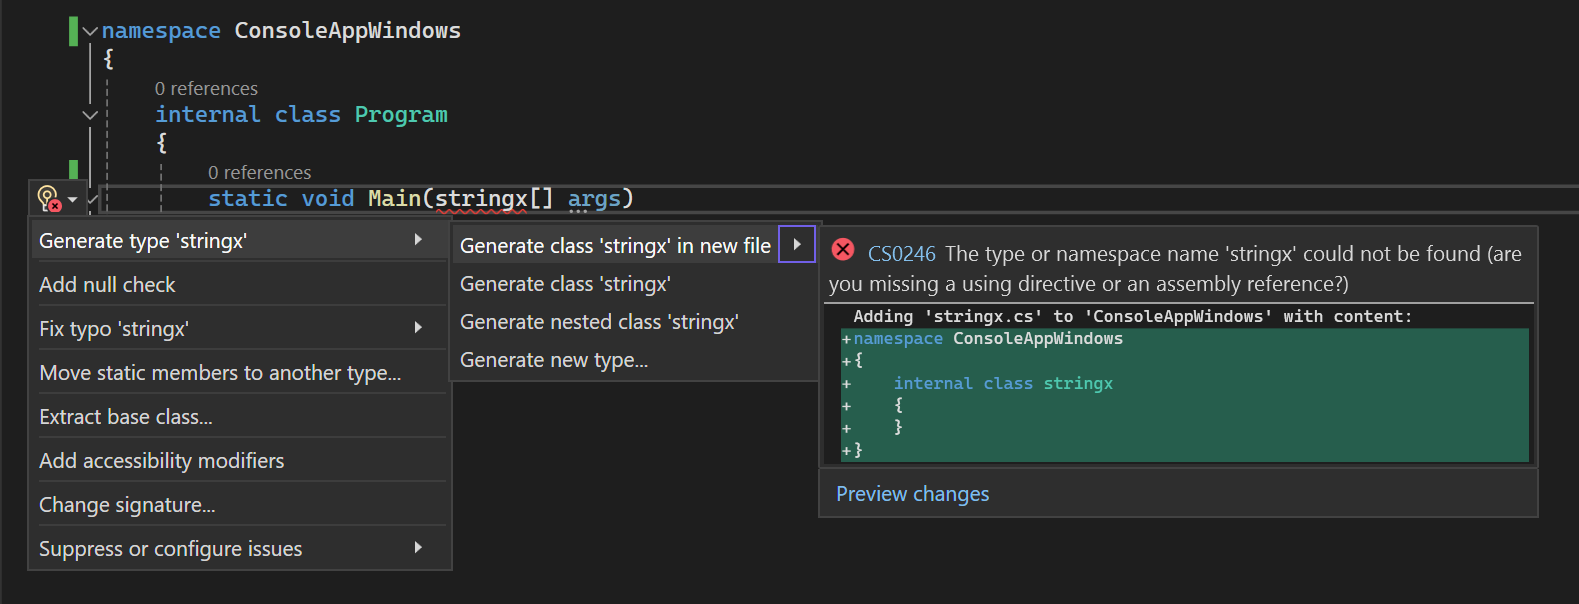 Captura de tela que mostra uma violação do analisador e uma correção de código de Ação Rápida no editor de código.